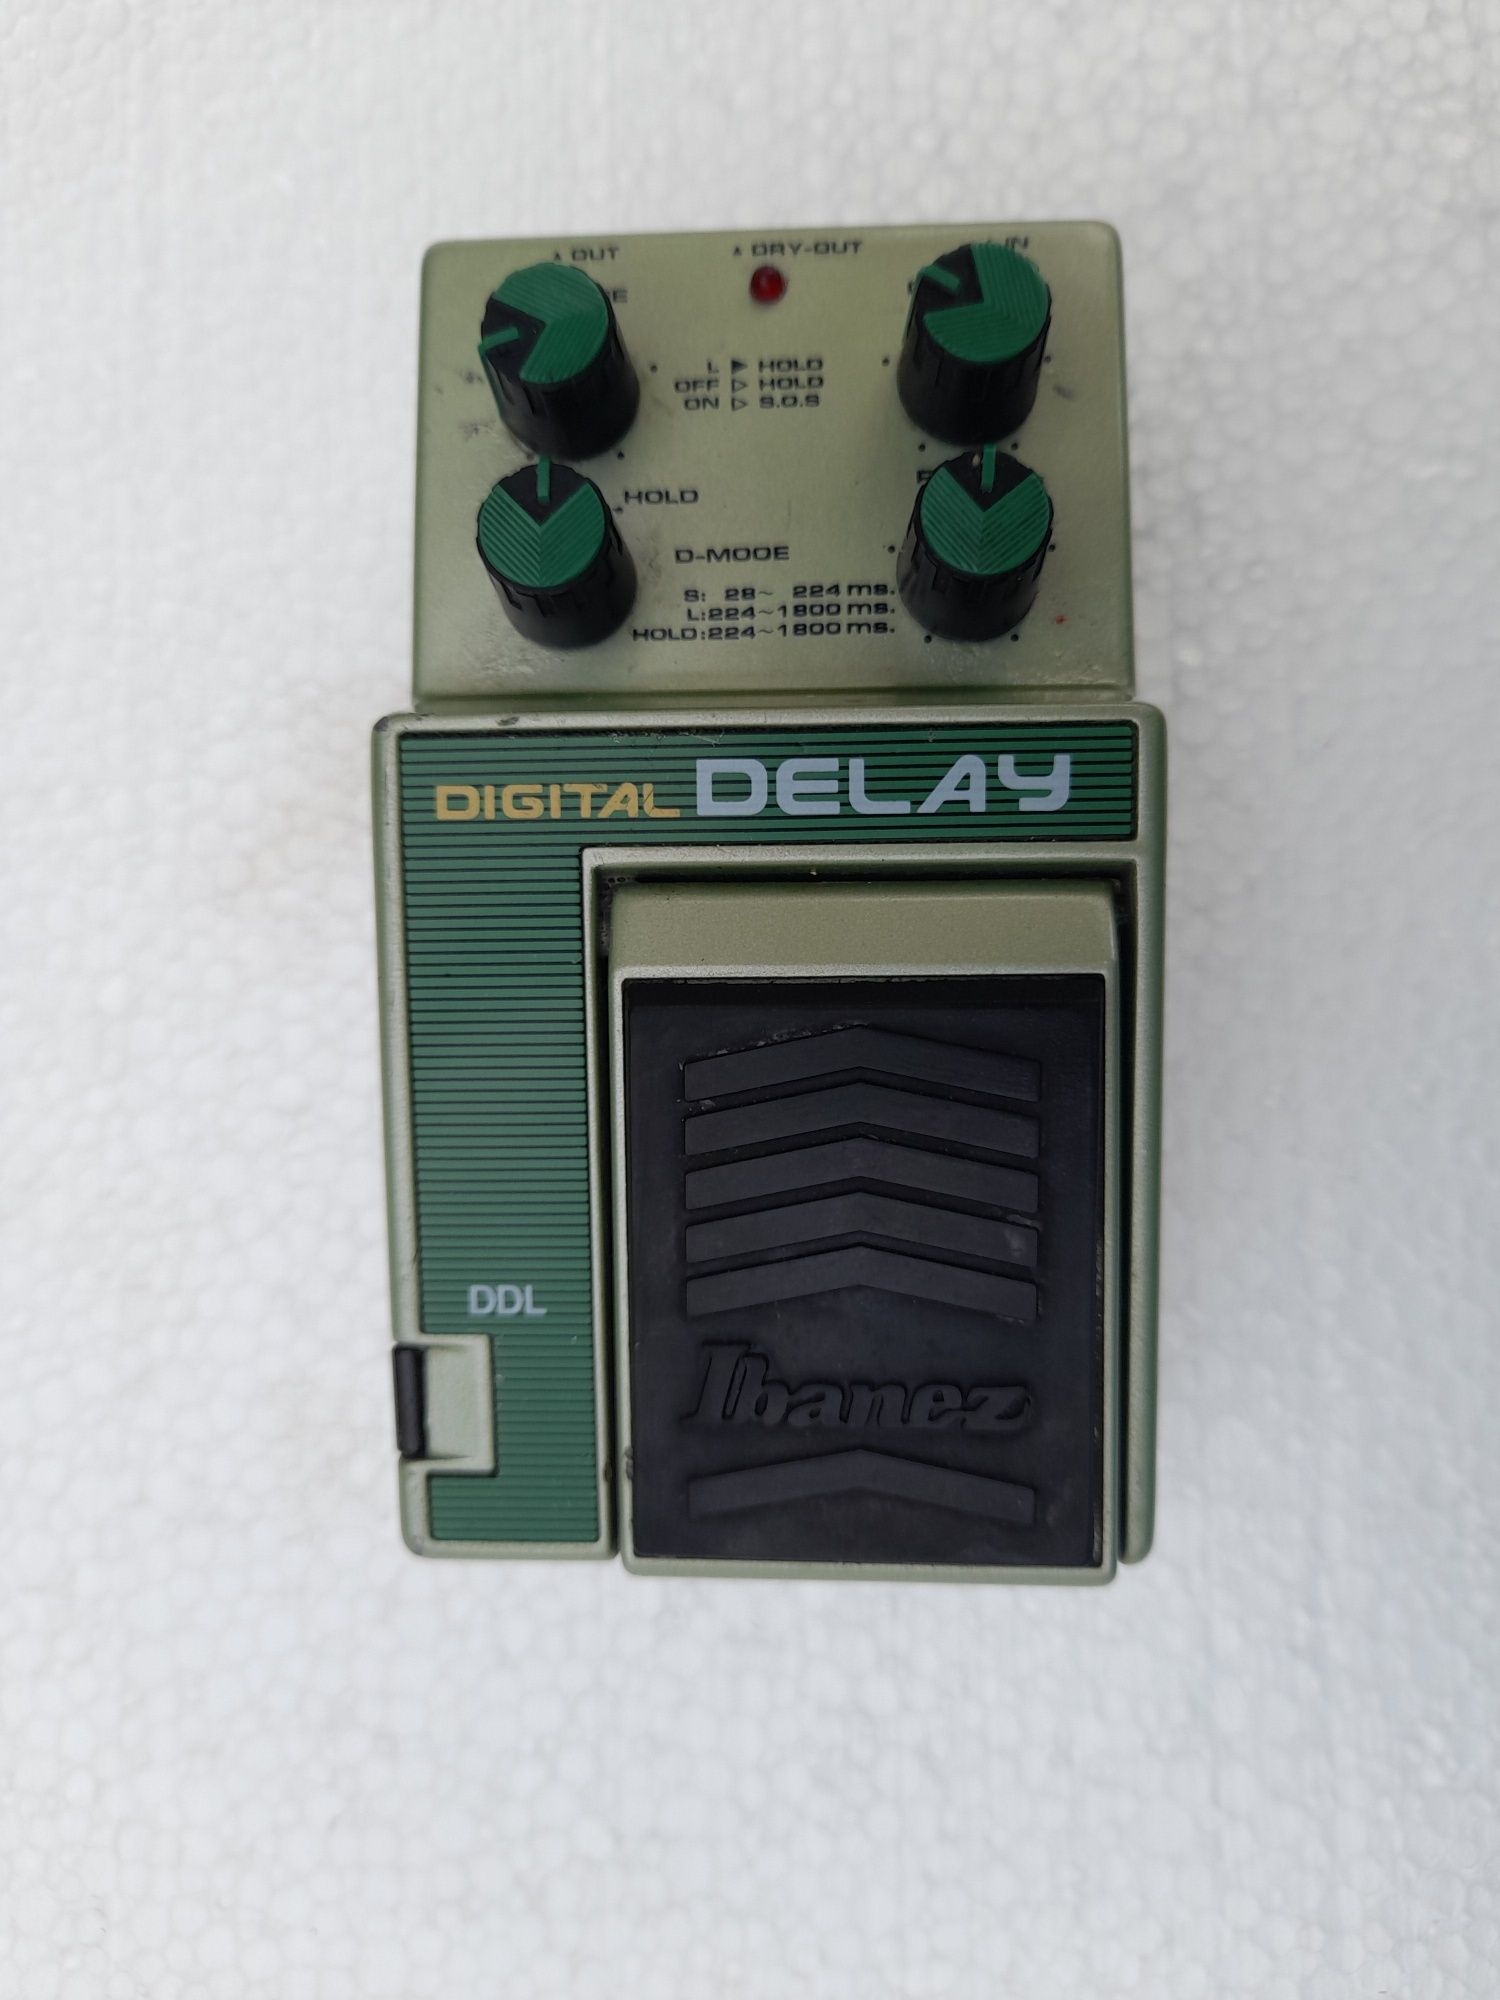 Ibanez DDL  Digital Delay pedala efect chitara